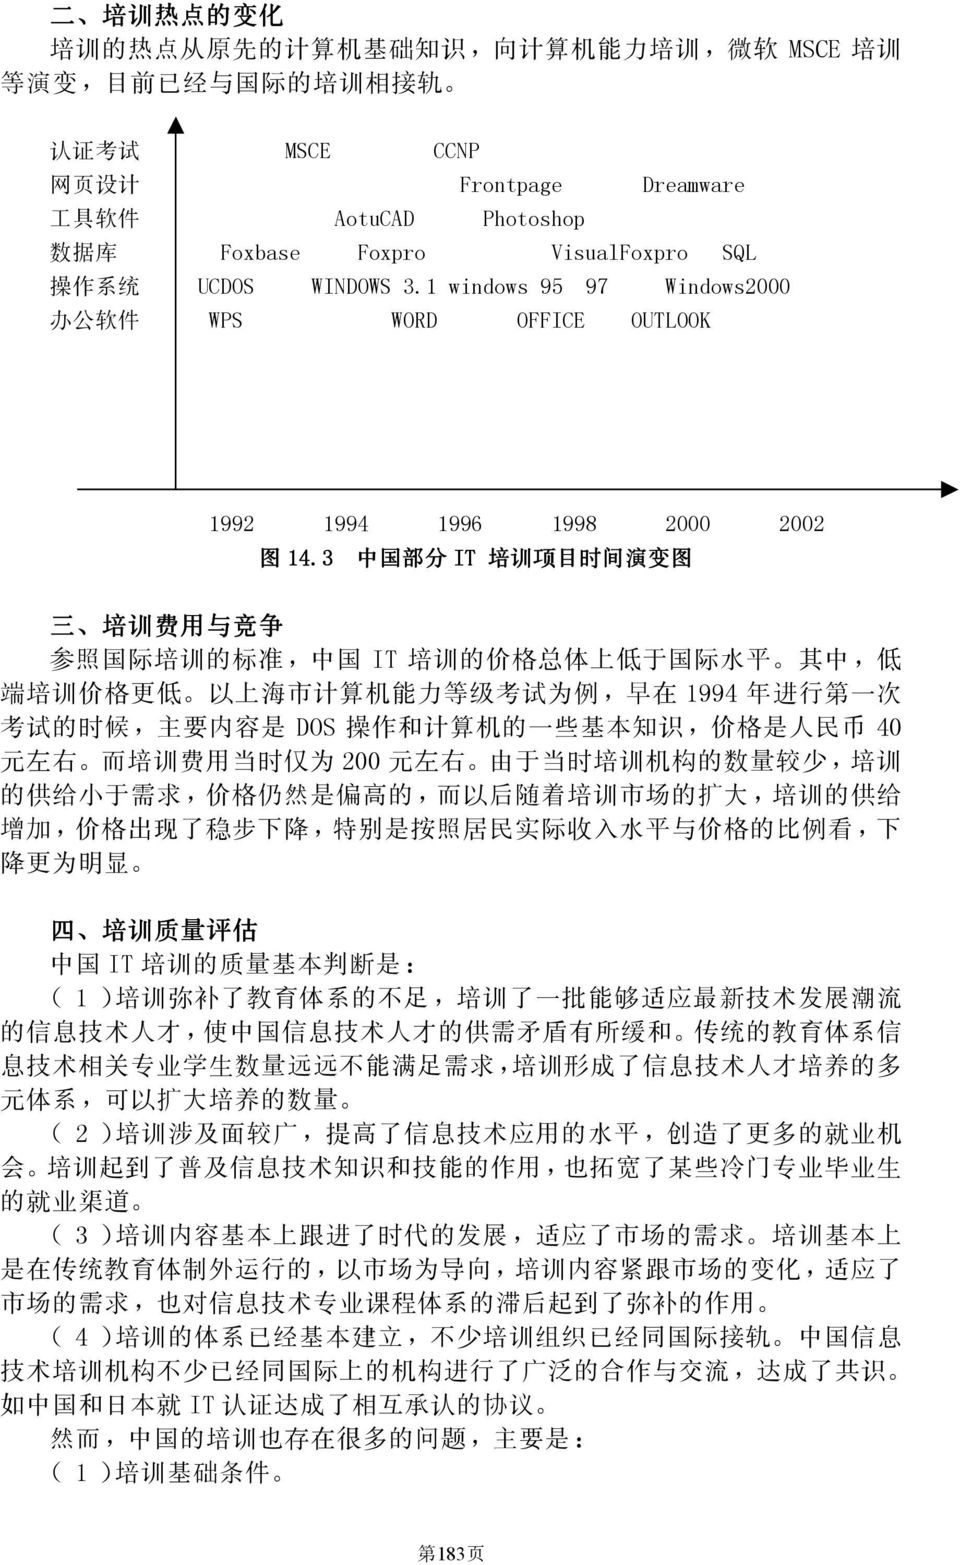 3 中 国 部 分 IT 培 训 项 目 时 间 演 变 图 三 培 训 费 用 与 竞 争 参 照 国 际 培 训 的 标 准, 中 国 IT 培 训 的 价 格 总 体 上 低 于 国 际 水 平 其 中, 低 端 培 训 价 格 更 低 以 上 海 市 计 算 机 能 力 等 级 考 试 为 例, 早 在 1994 年 进 行 第 一 次 考 试 的 时 候, 主 要 内 容 是 DOS